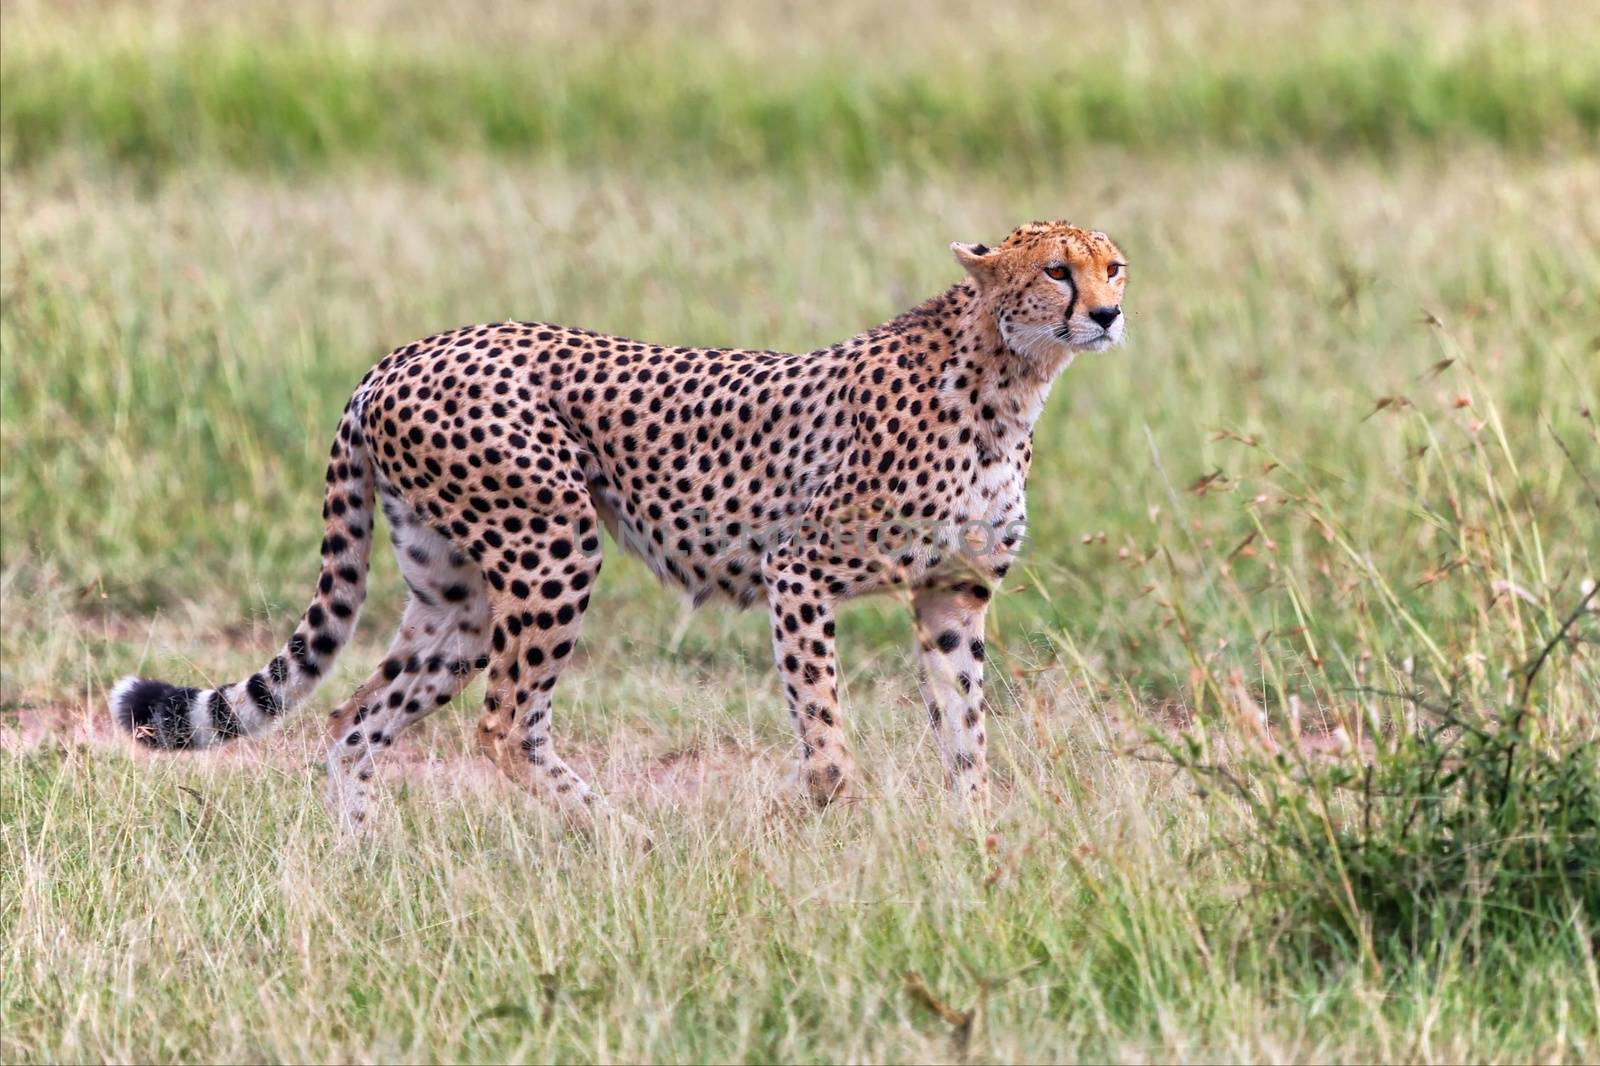 a beautiful cheetah hunting at the masai mara national park